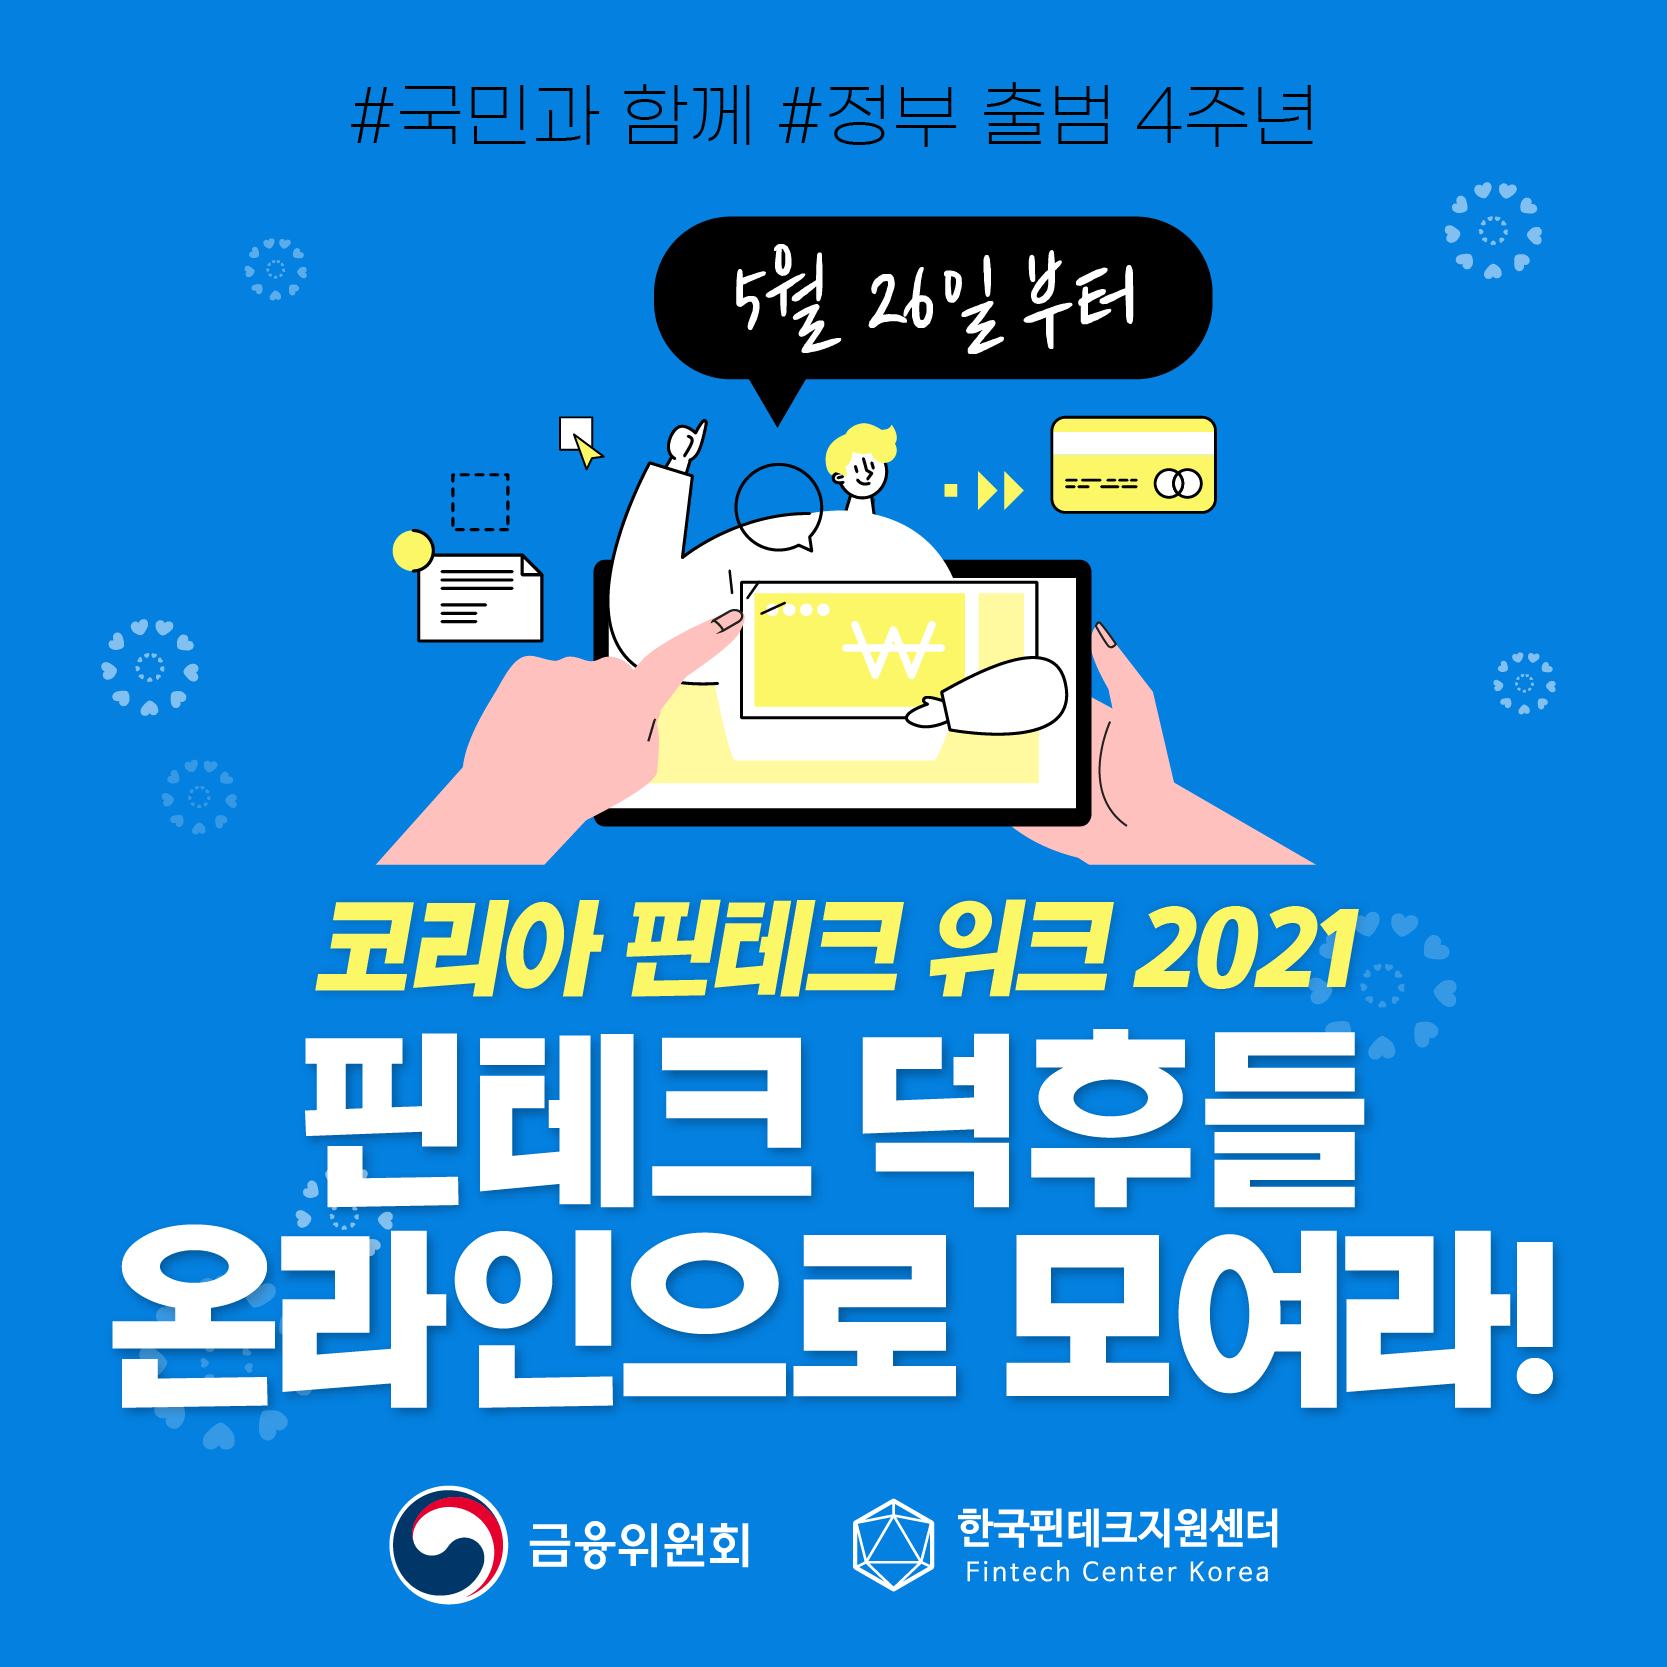 [카드뉴스] 코리아 핀테크 위크 2021, 핀테크 덕후들 온라인으로 모여라!